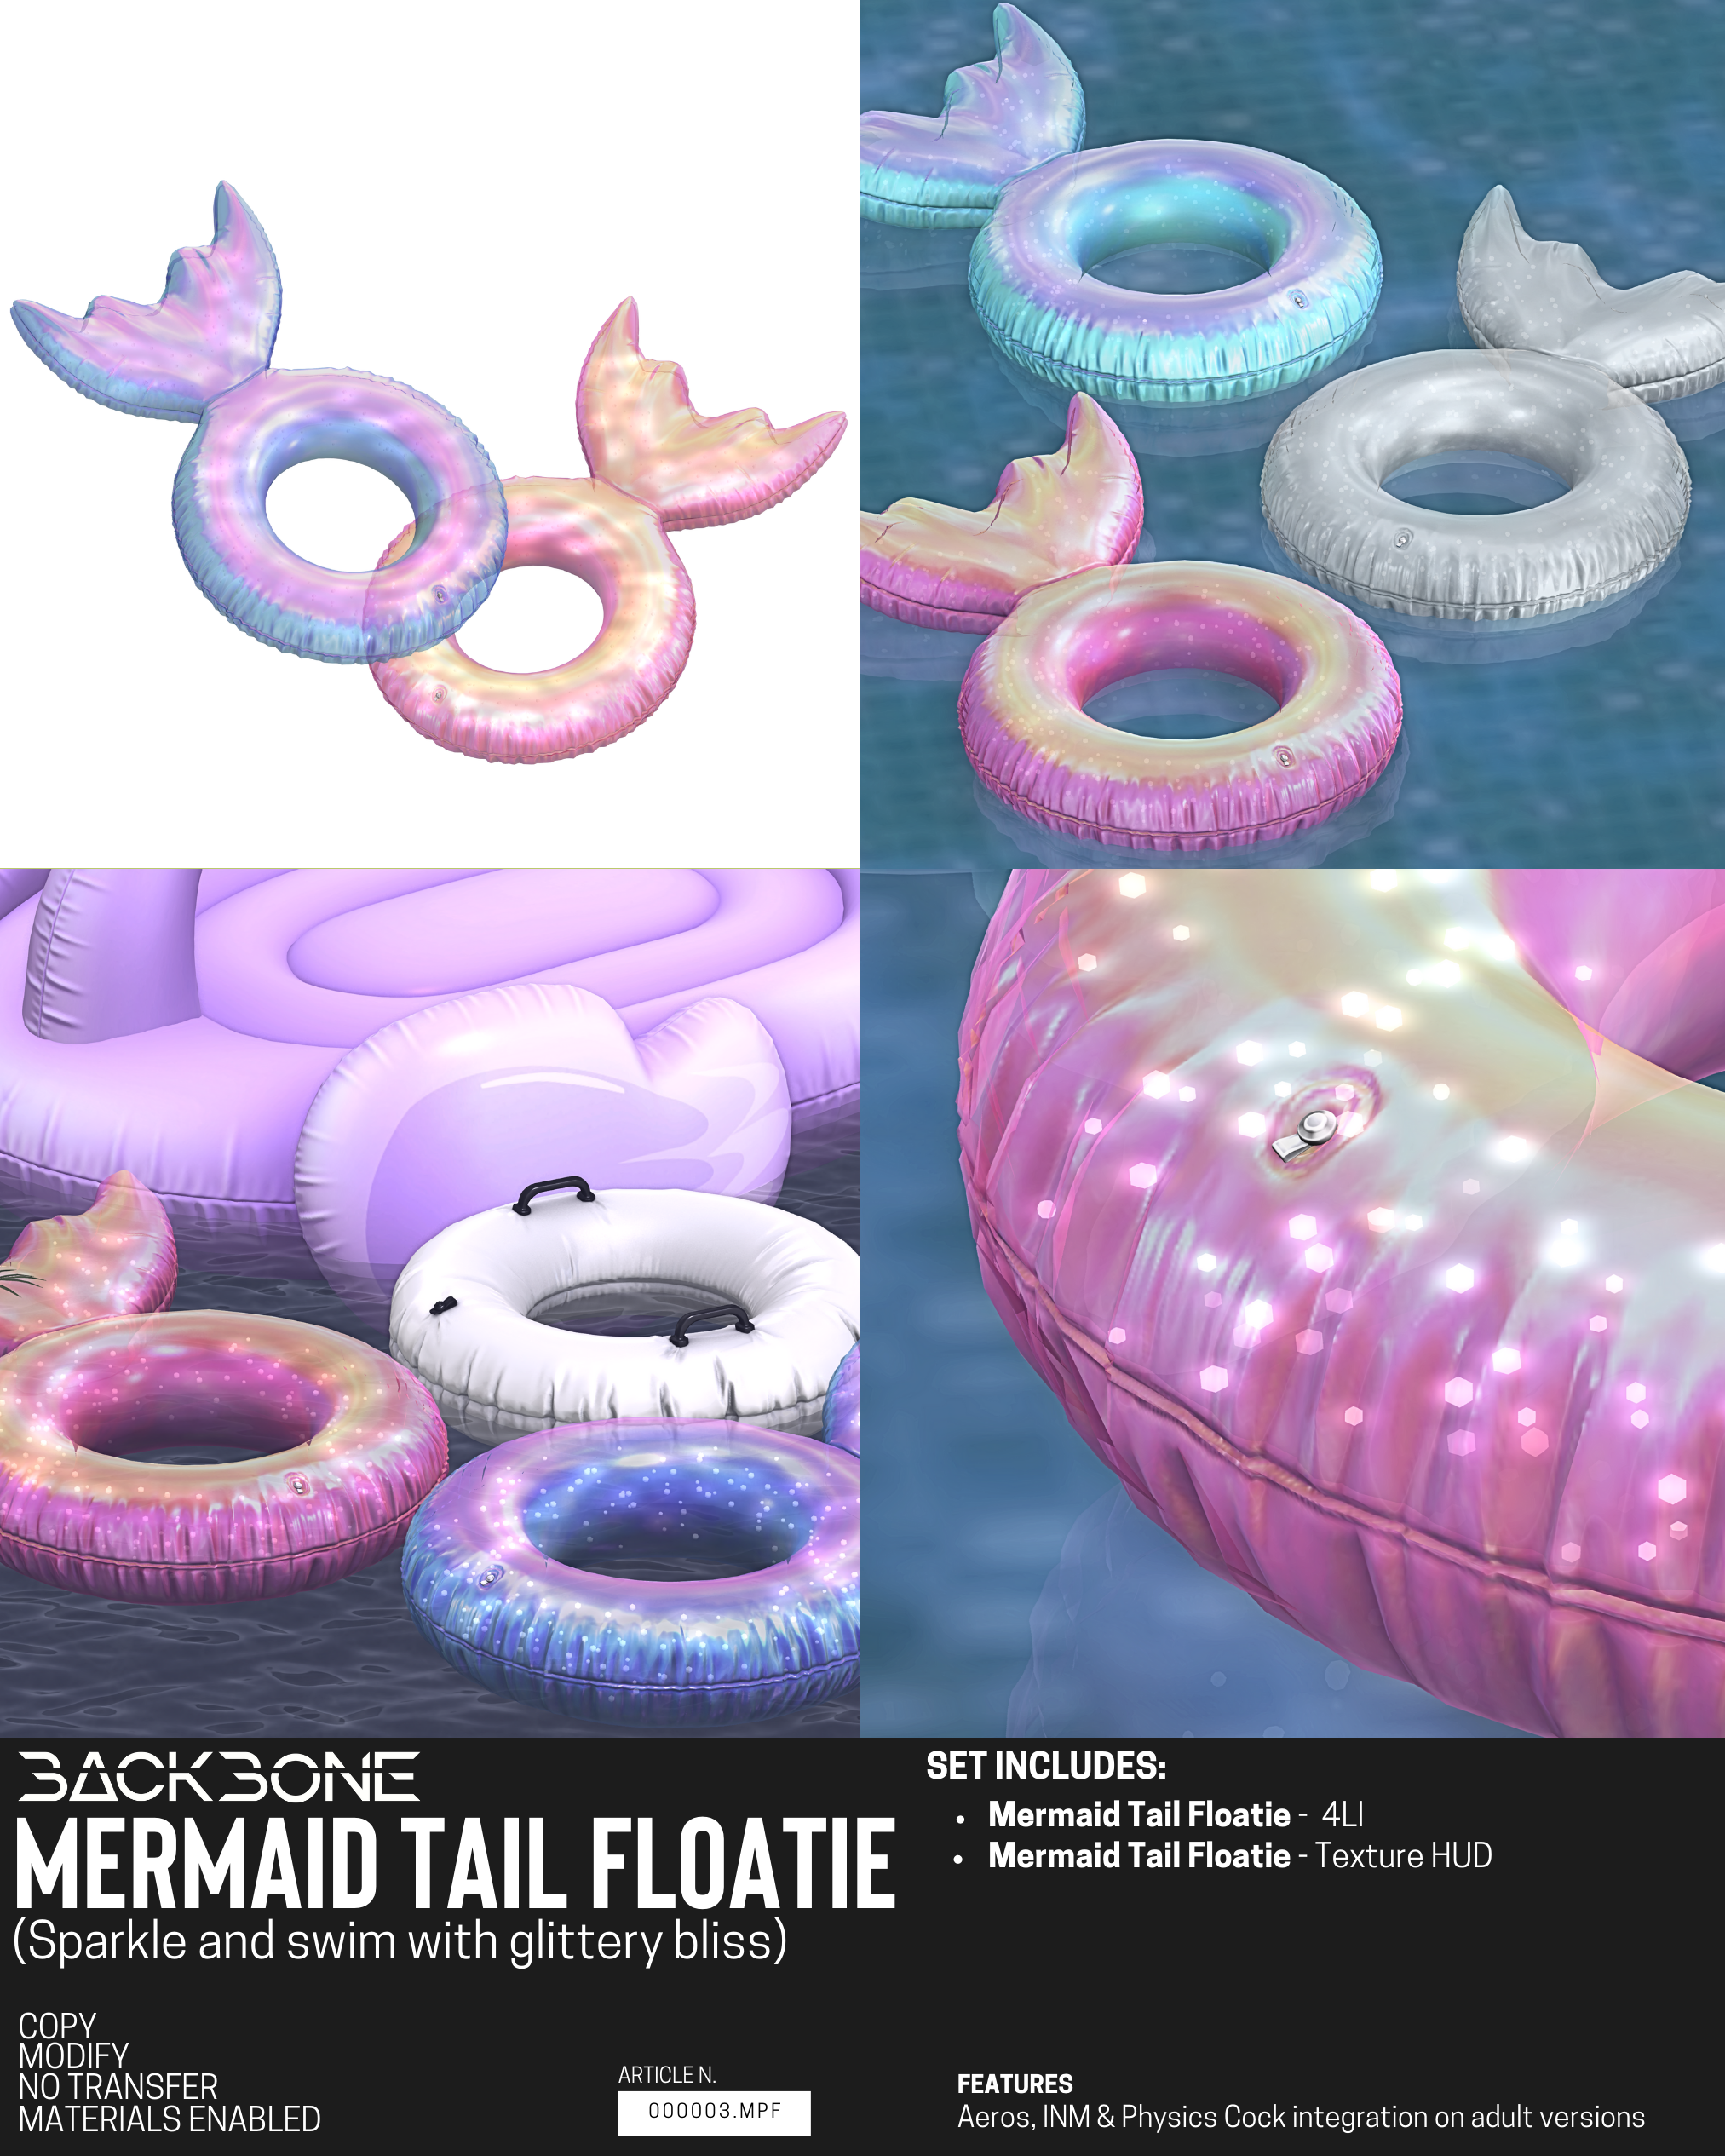 BackBone – Mermaid Tail Floatie